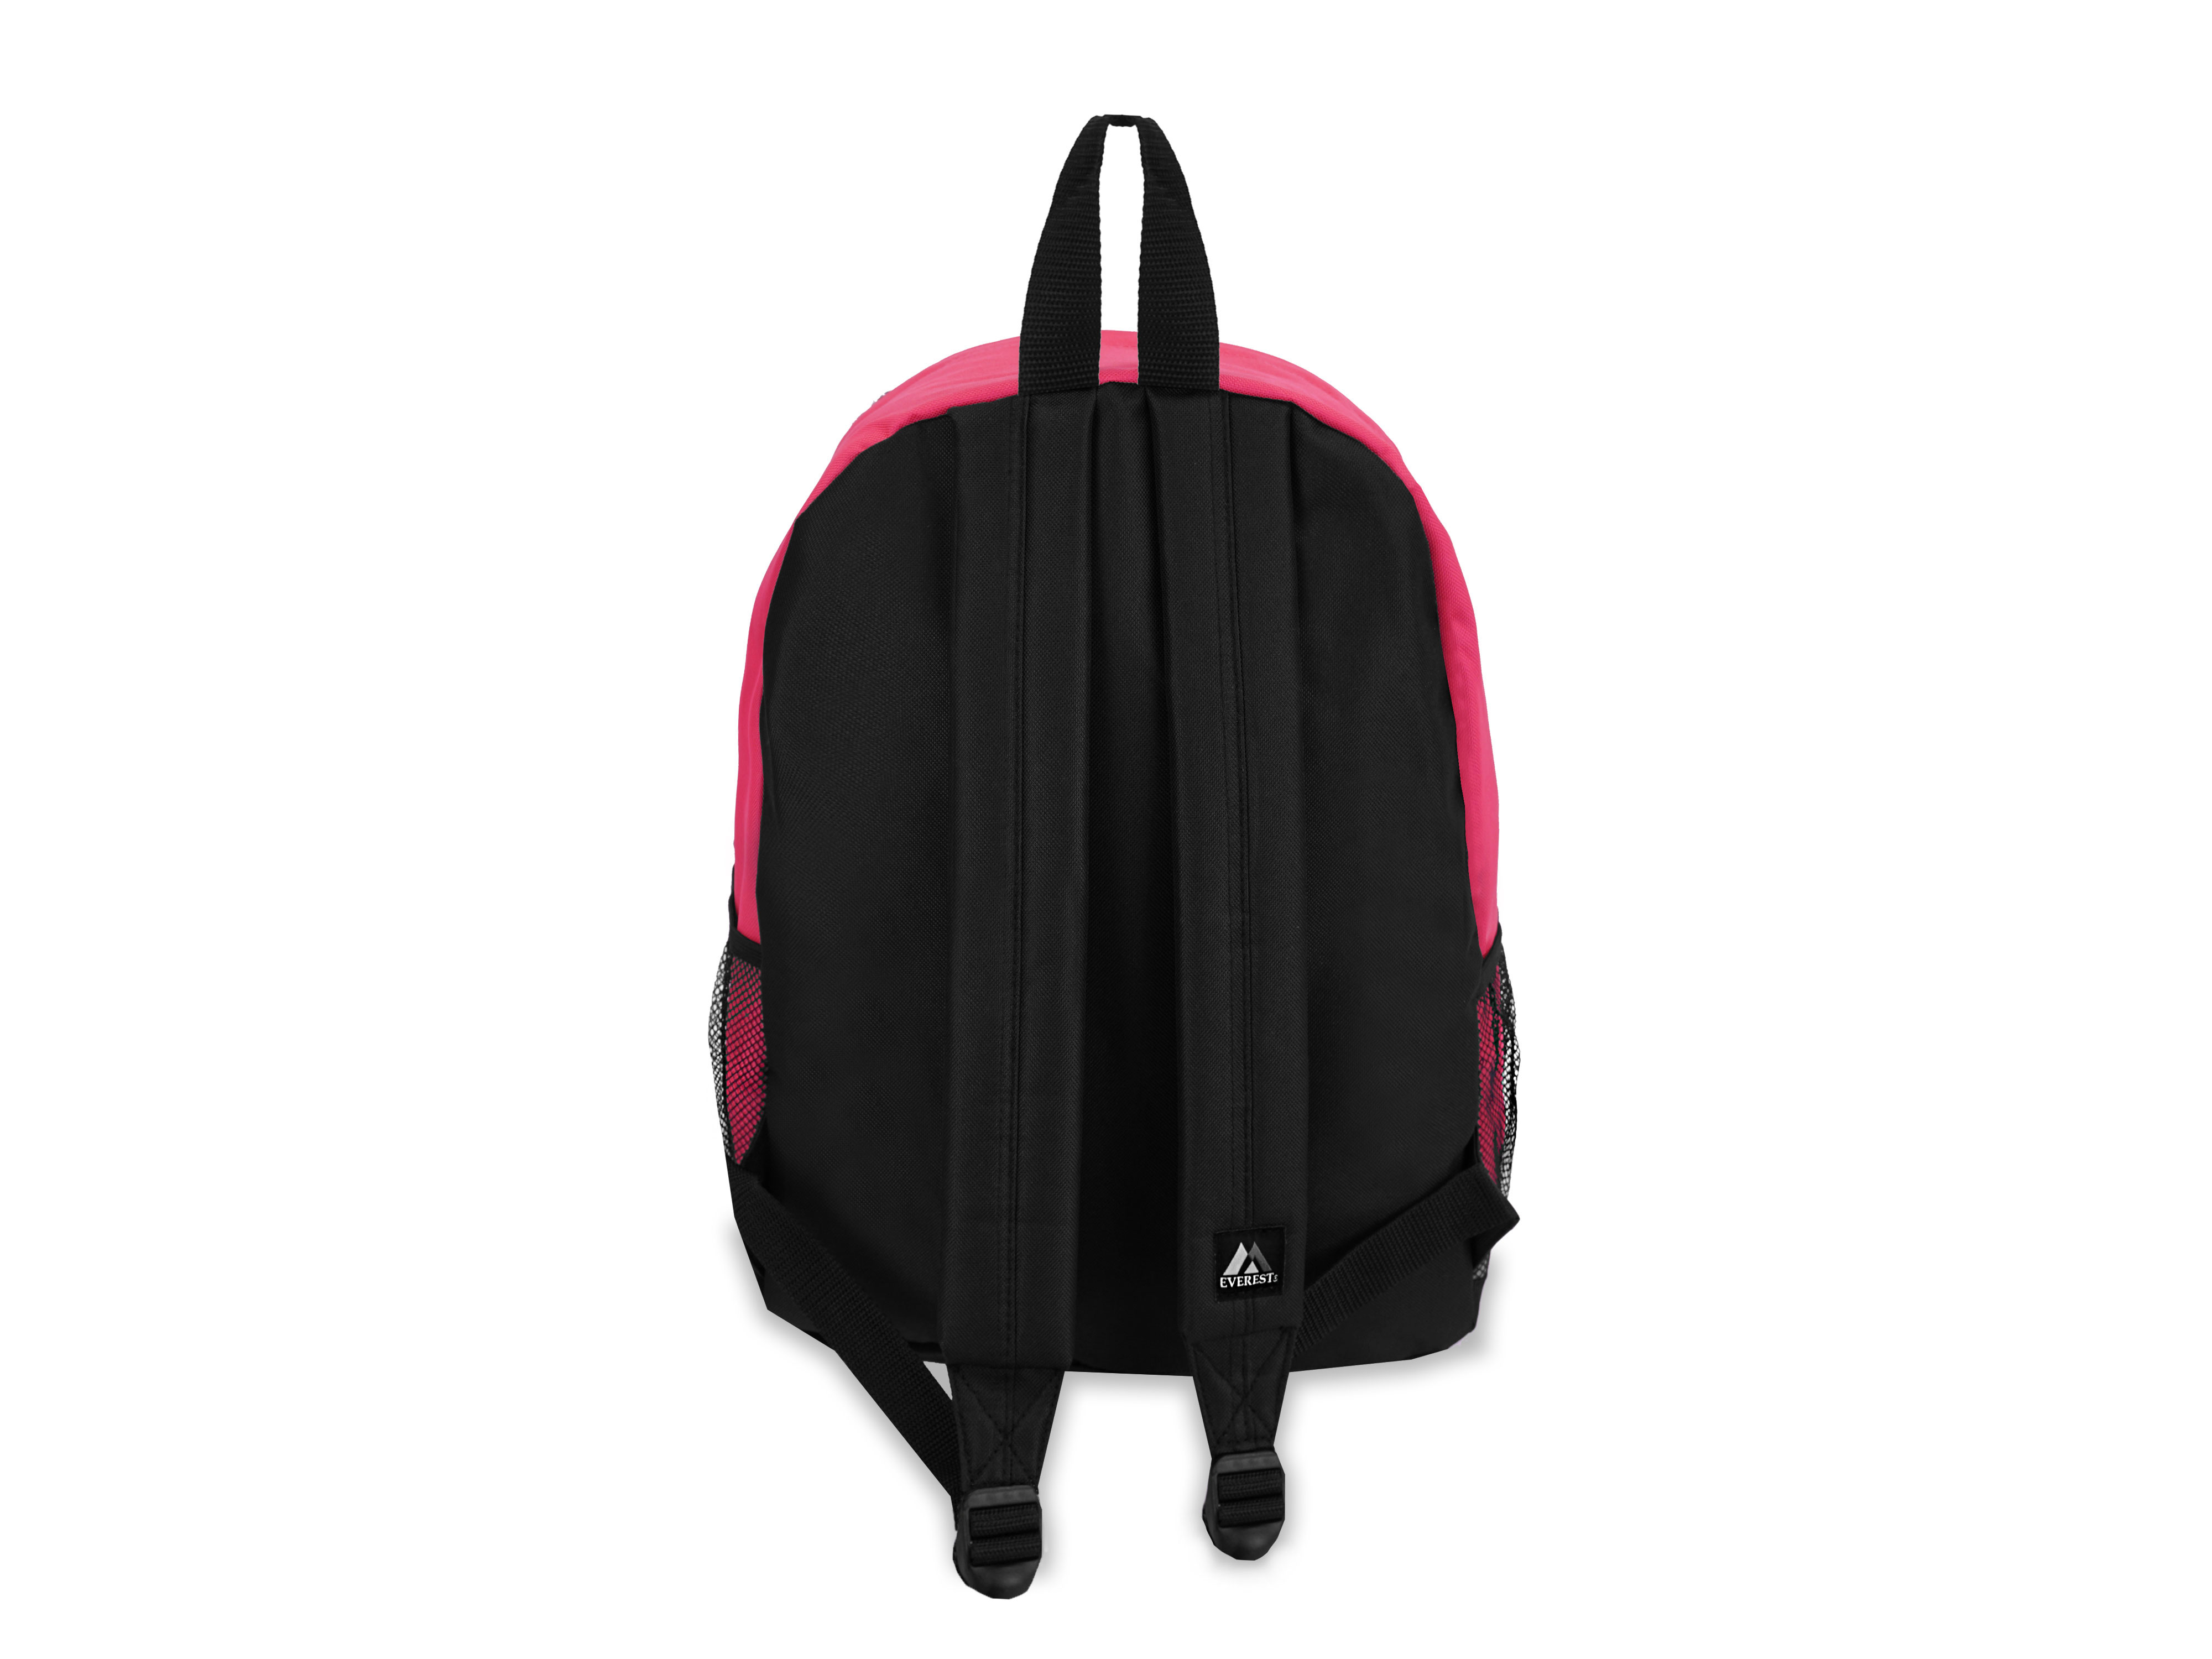 Everest 17" Backpack with Front & Side Pockets, HOT PINK/BLACK All Ages, Unisex - BP2072-HPK/BK - image 3 of 4